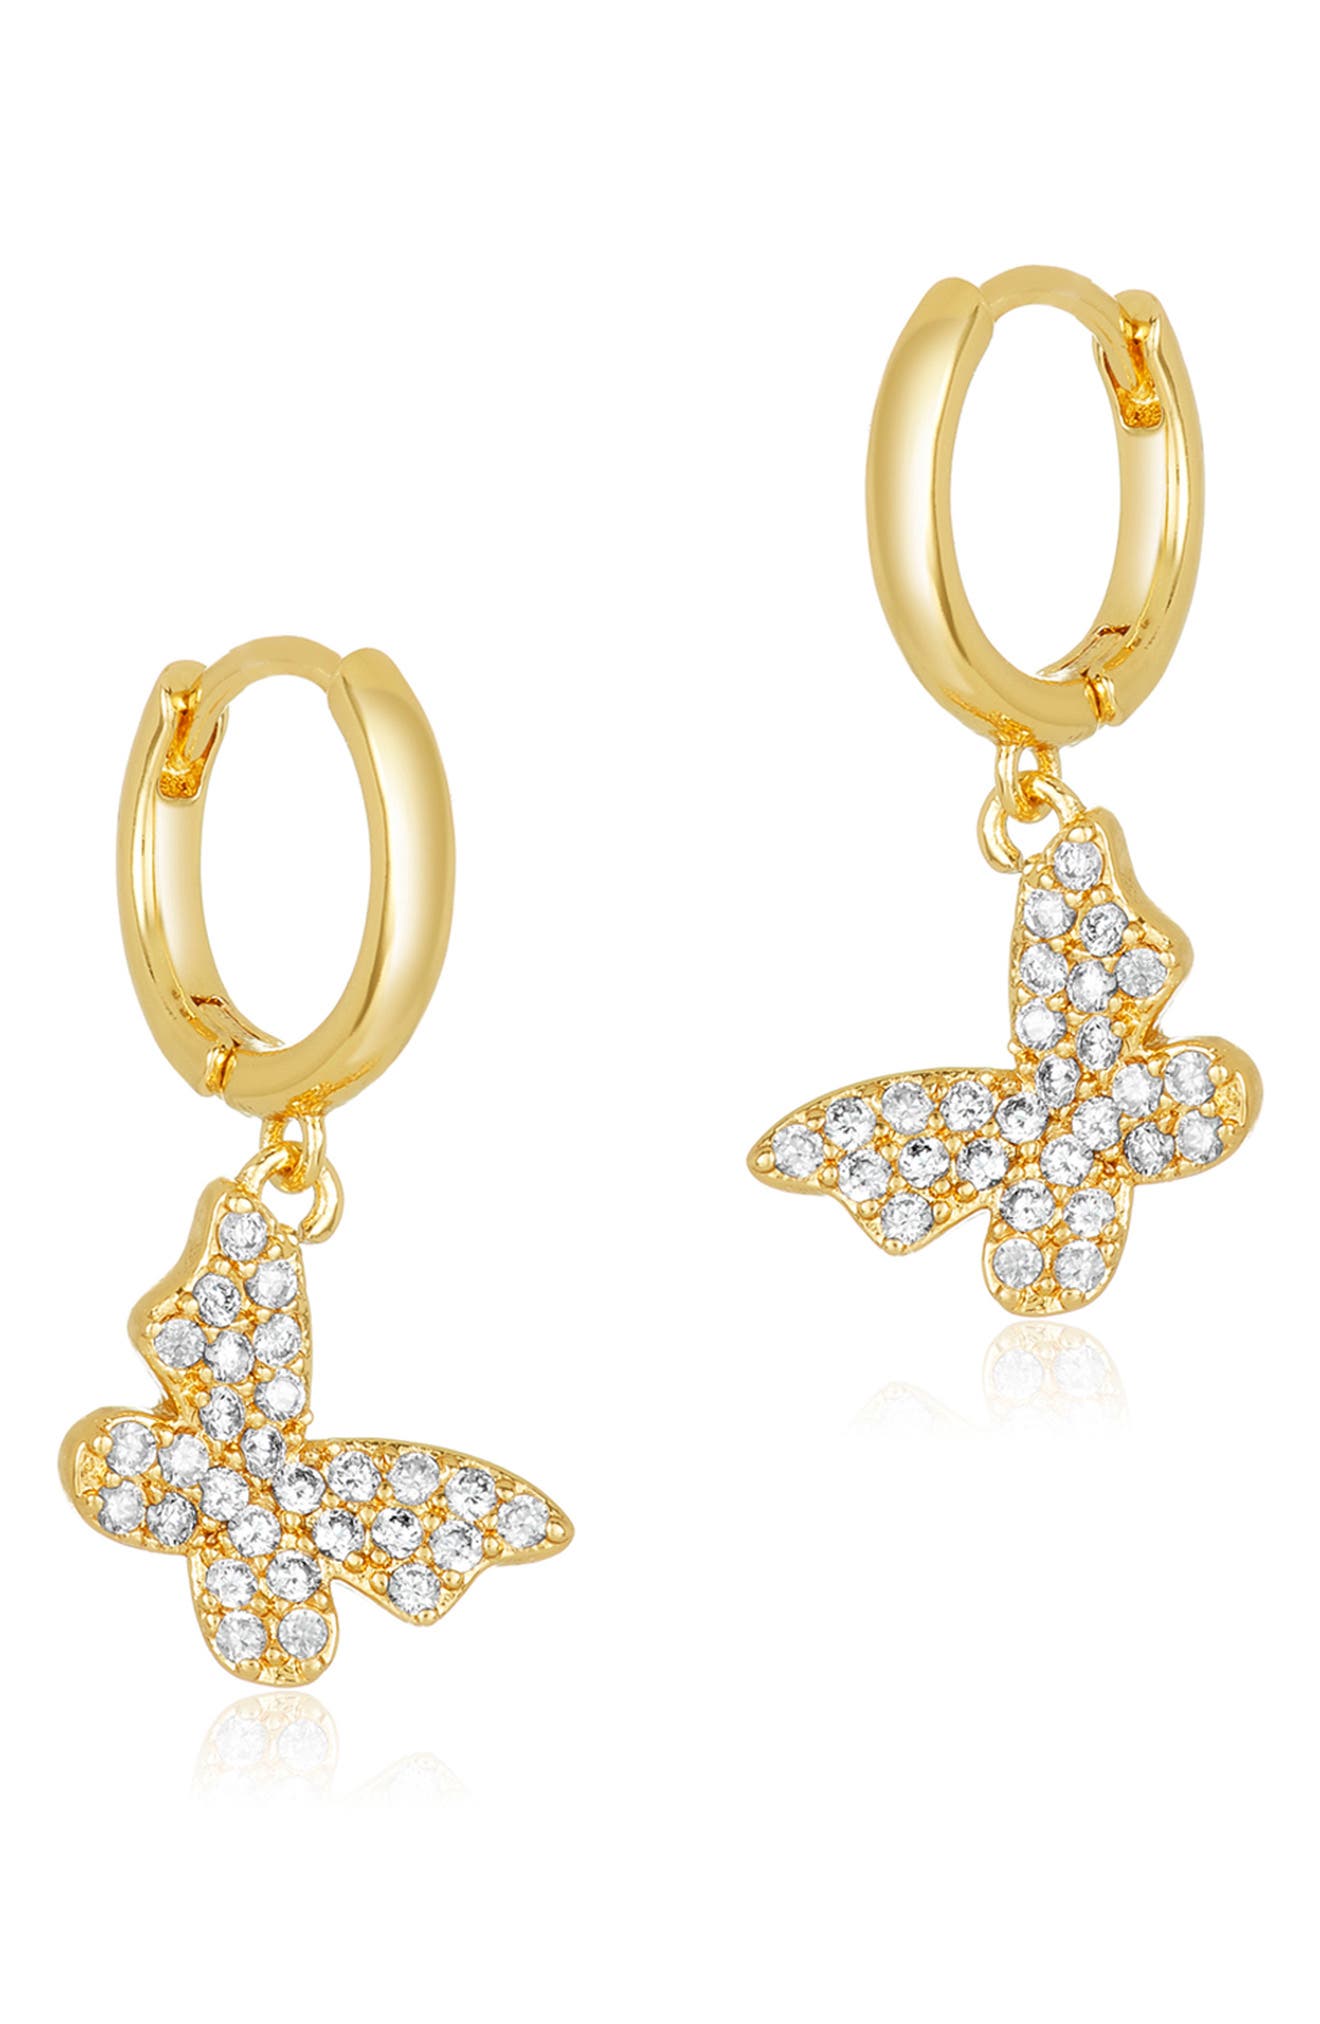 cz pave butterfly drop earrings 18k Gold plated stud earrings post findings